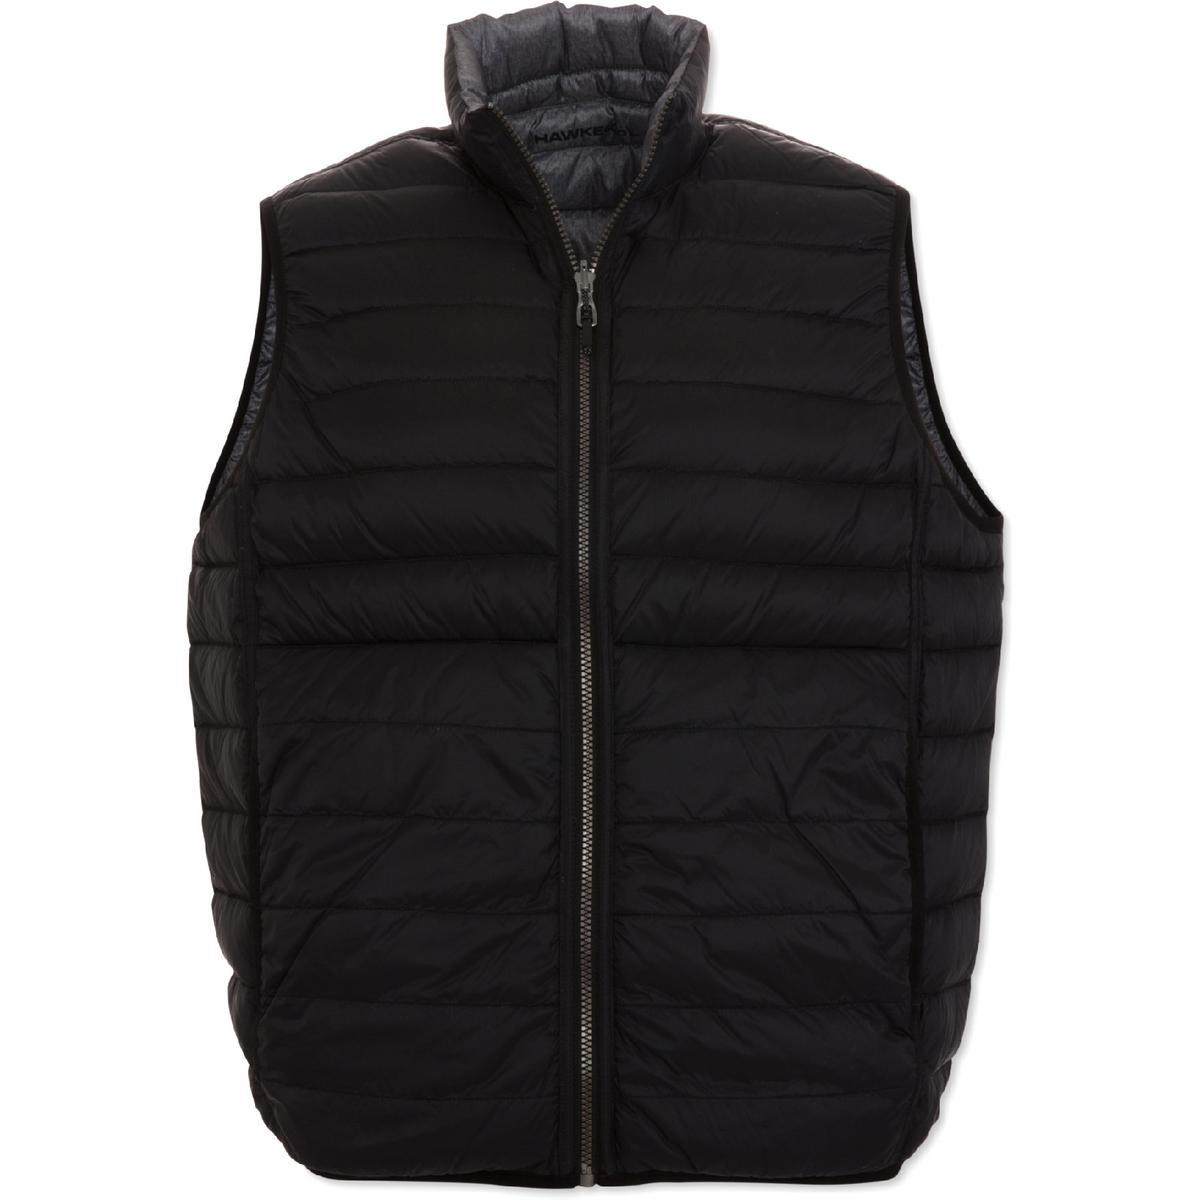 Hawke & Co. Mens Black Reversible Packable Vest Outerwear S BHFO 6542 ...